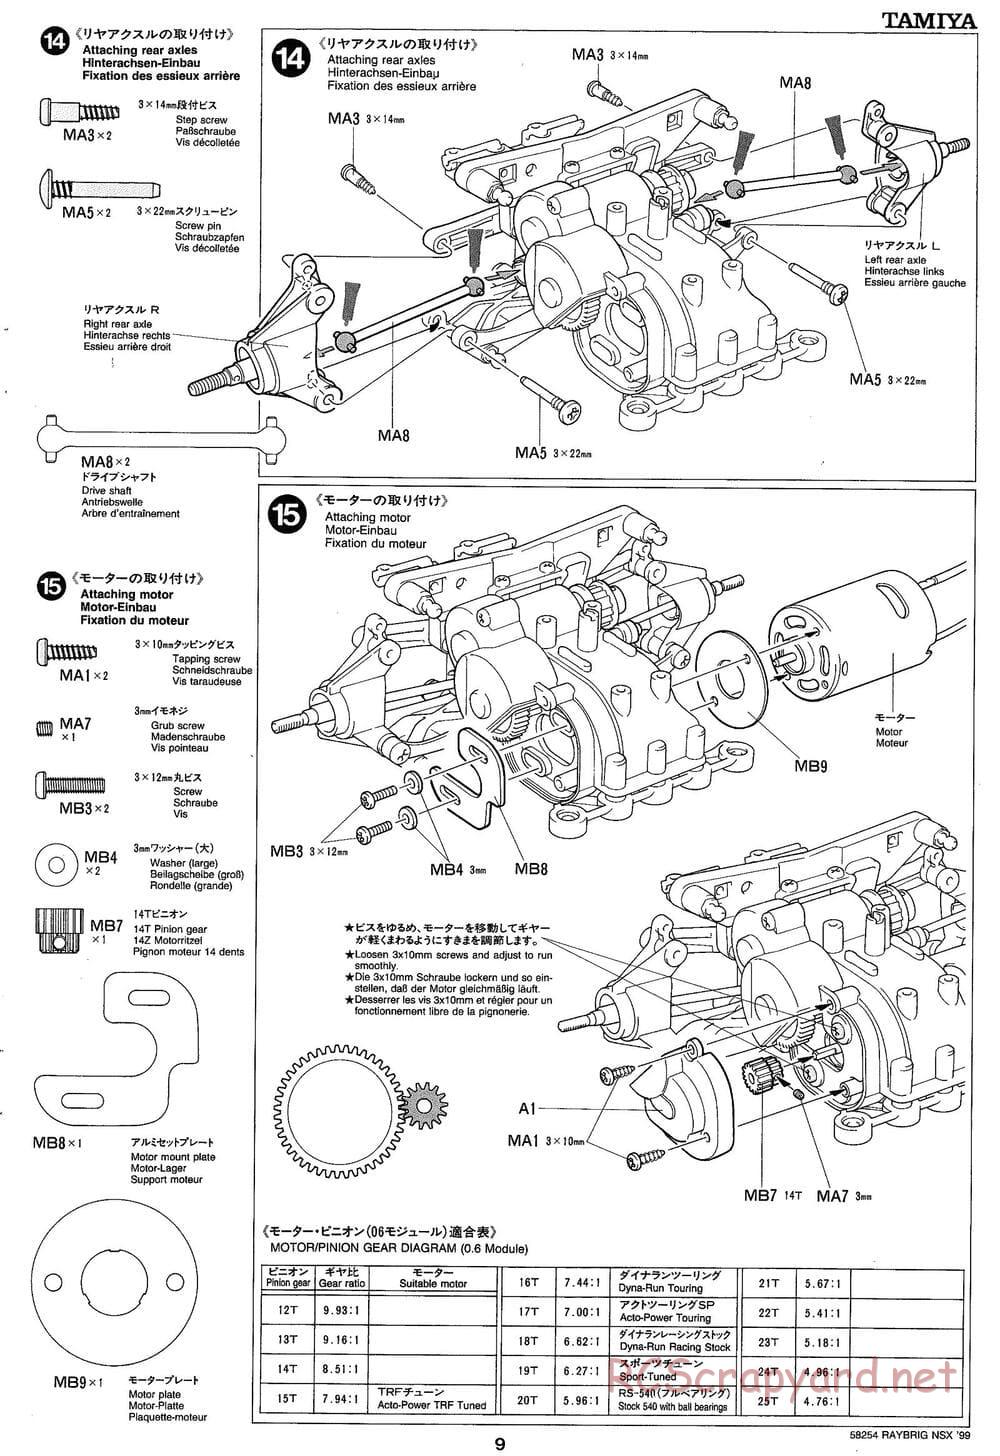 Tamiya - Raybrig NSX 99 - TA-03R Chassis - Manual - Page 9